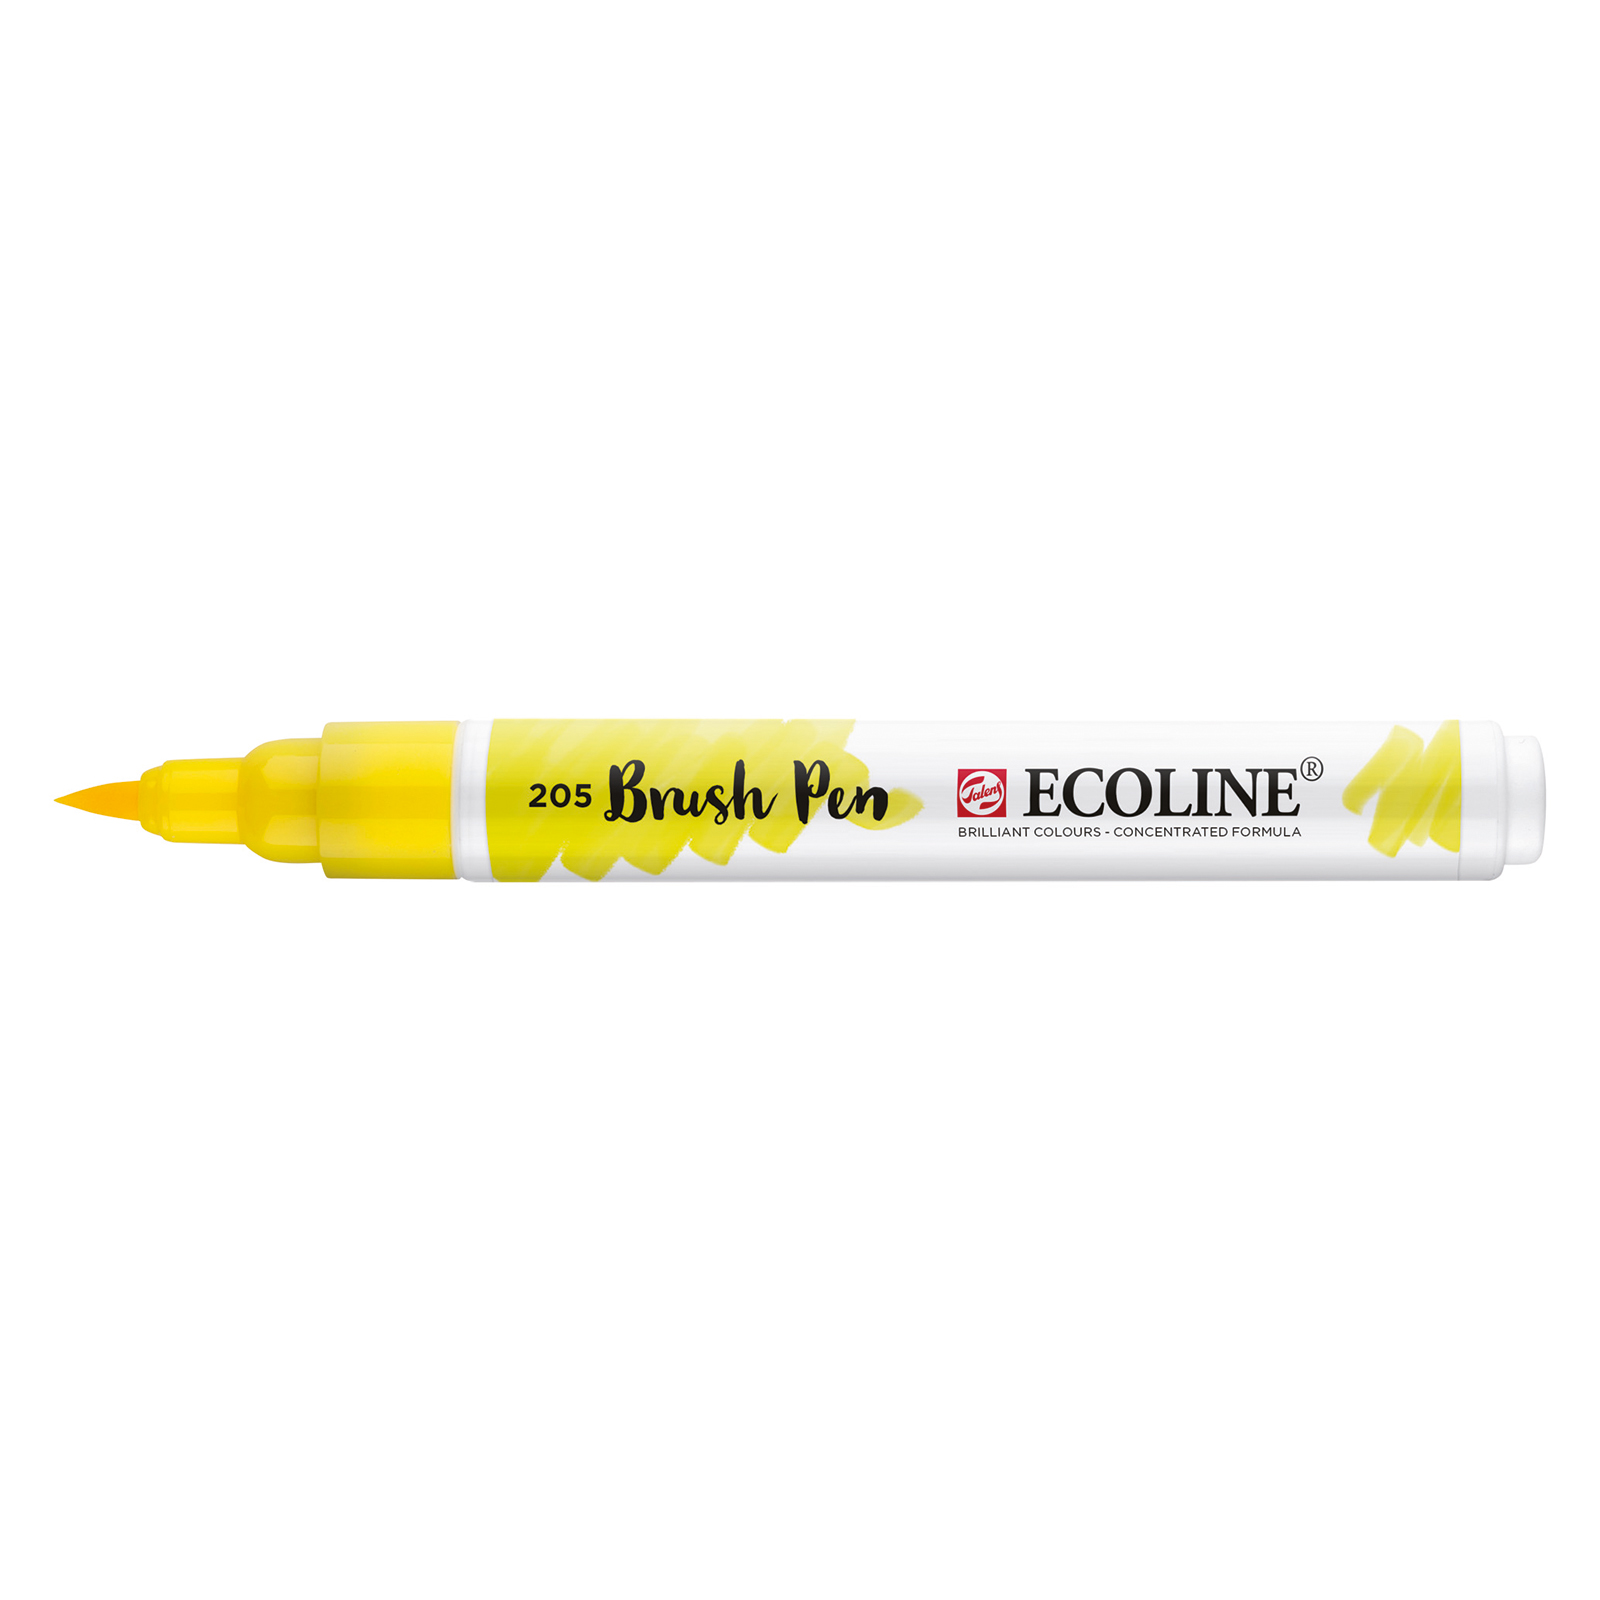 Ecoline • Brush Pen Citroengeel 205